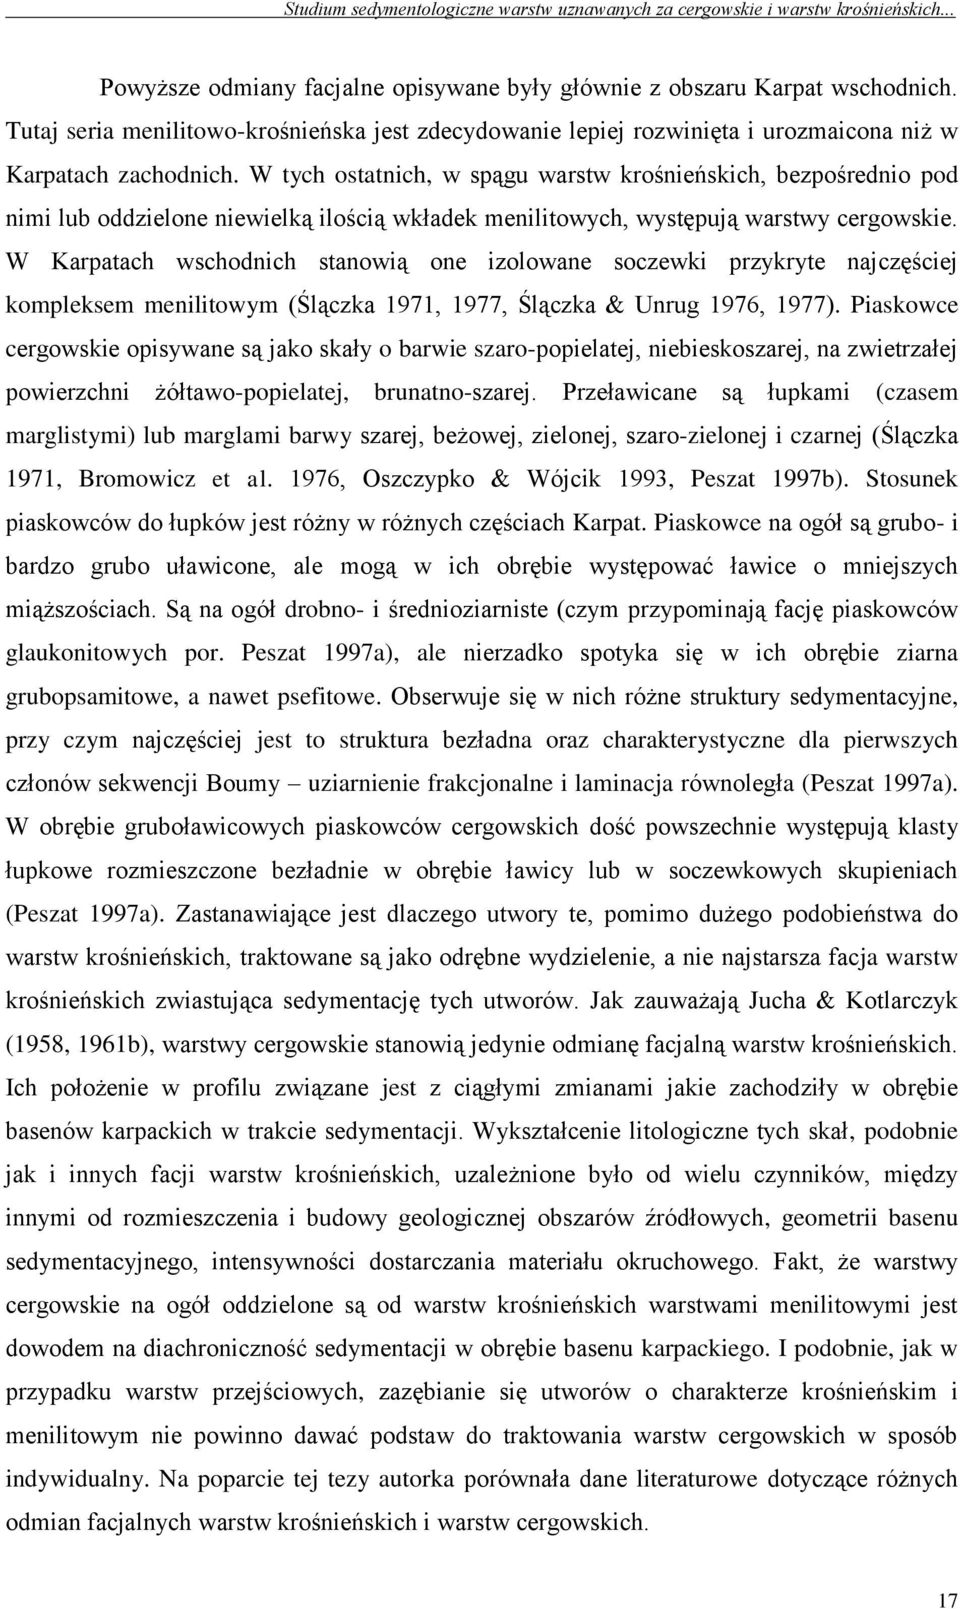 W Karpatach wschodnich stanowią one izolowane soczewki przykryte najczęściej kompleksem menilitowym (Ślączka 1971, 1977, Ślączka & Unrug 1976, 1977).